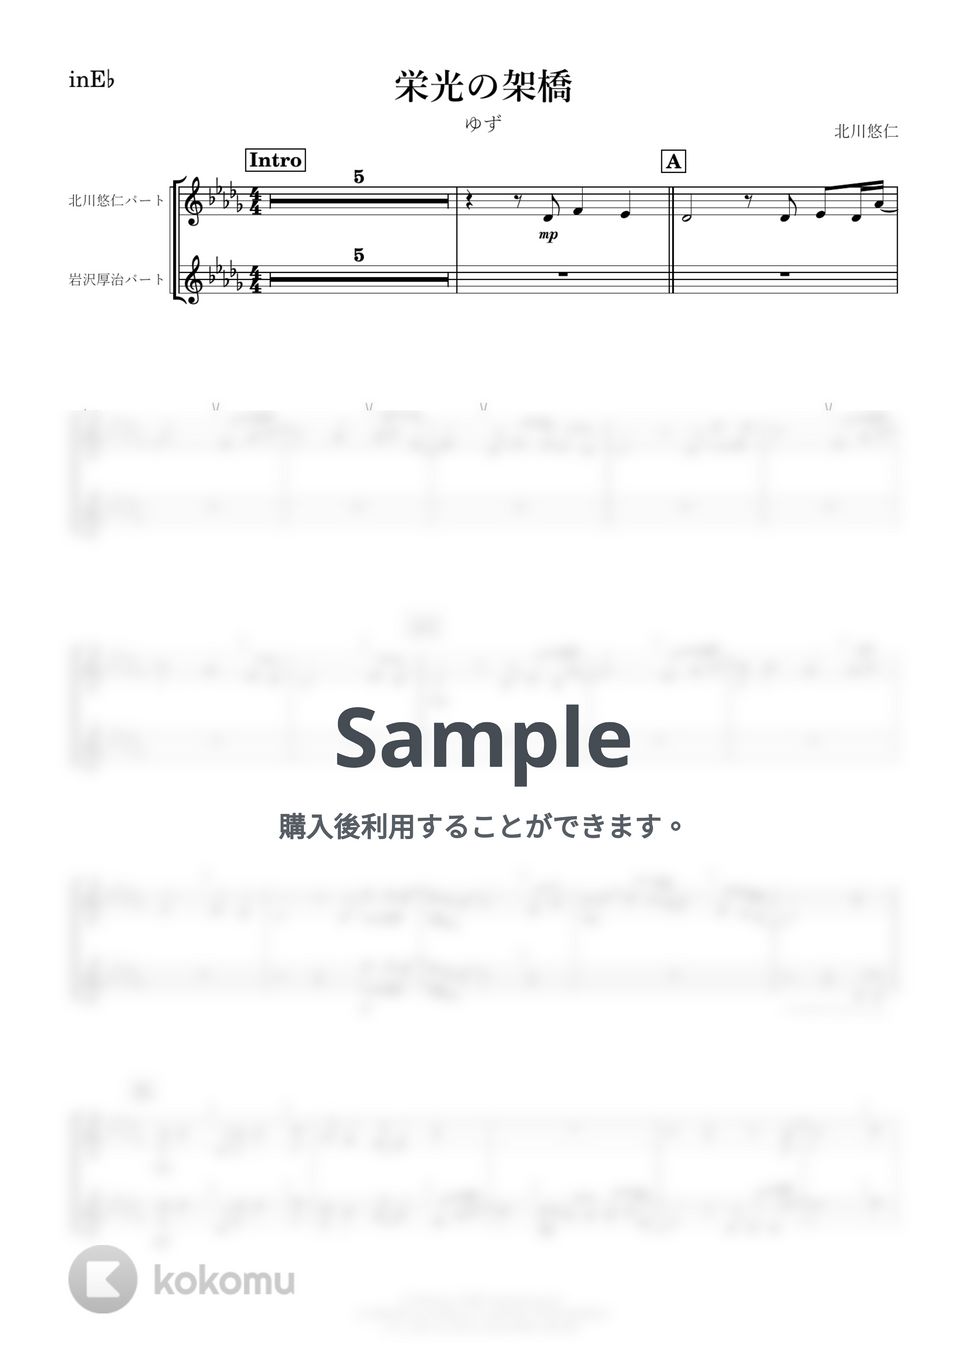 ゆず - 栄光の架橋 (E♭) by kanamusic